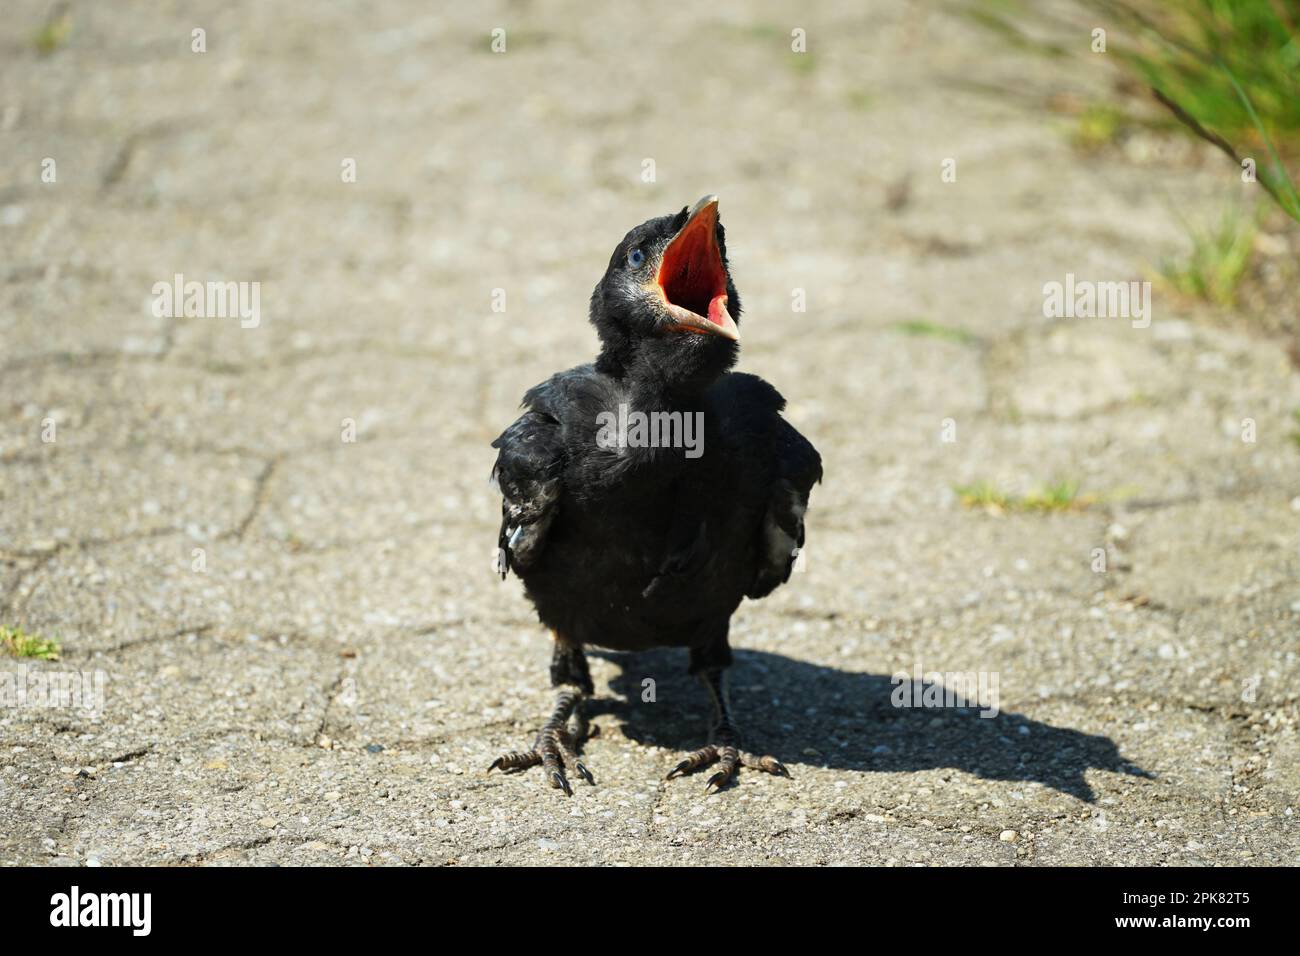 Little hungry screaming bird raven in a meadow, kleiner schreiender Rabe Vogel in einer Wiese in Bayern, Bavaria, Germany Stock Photo